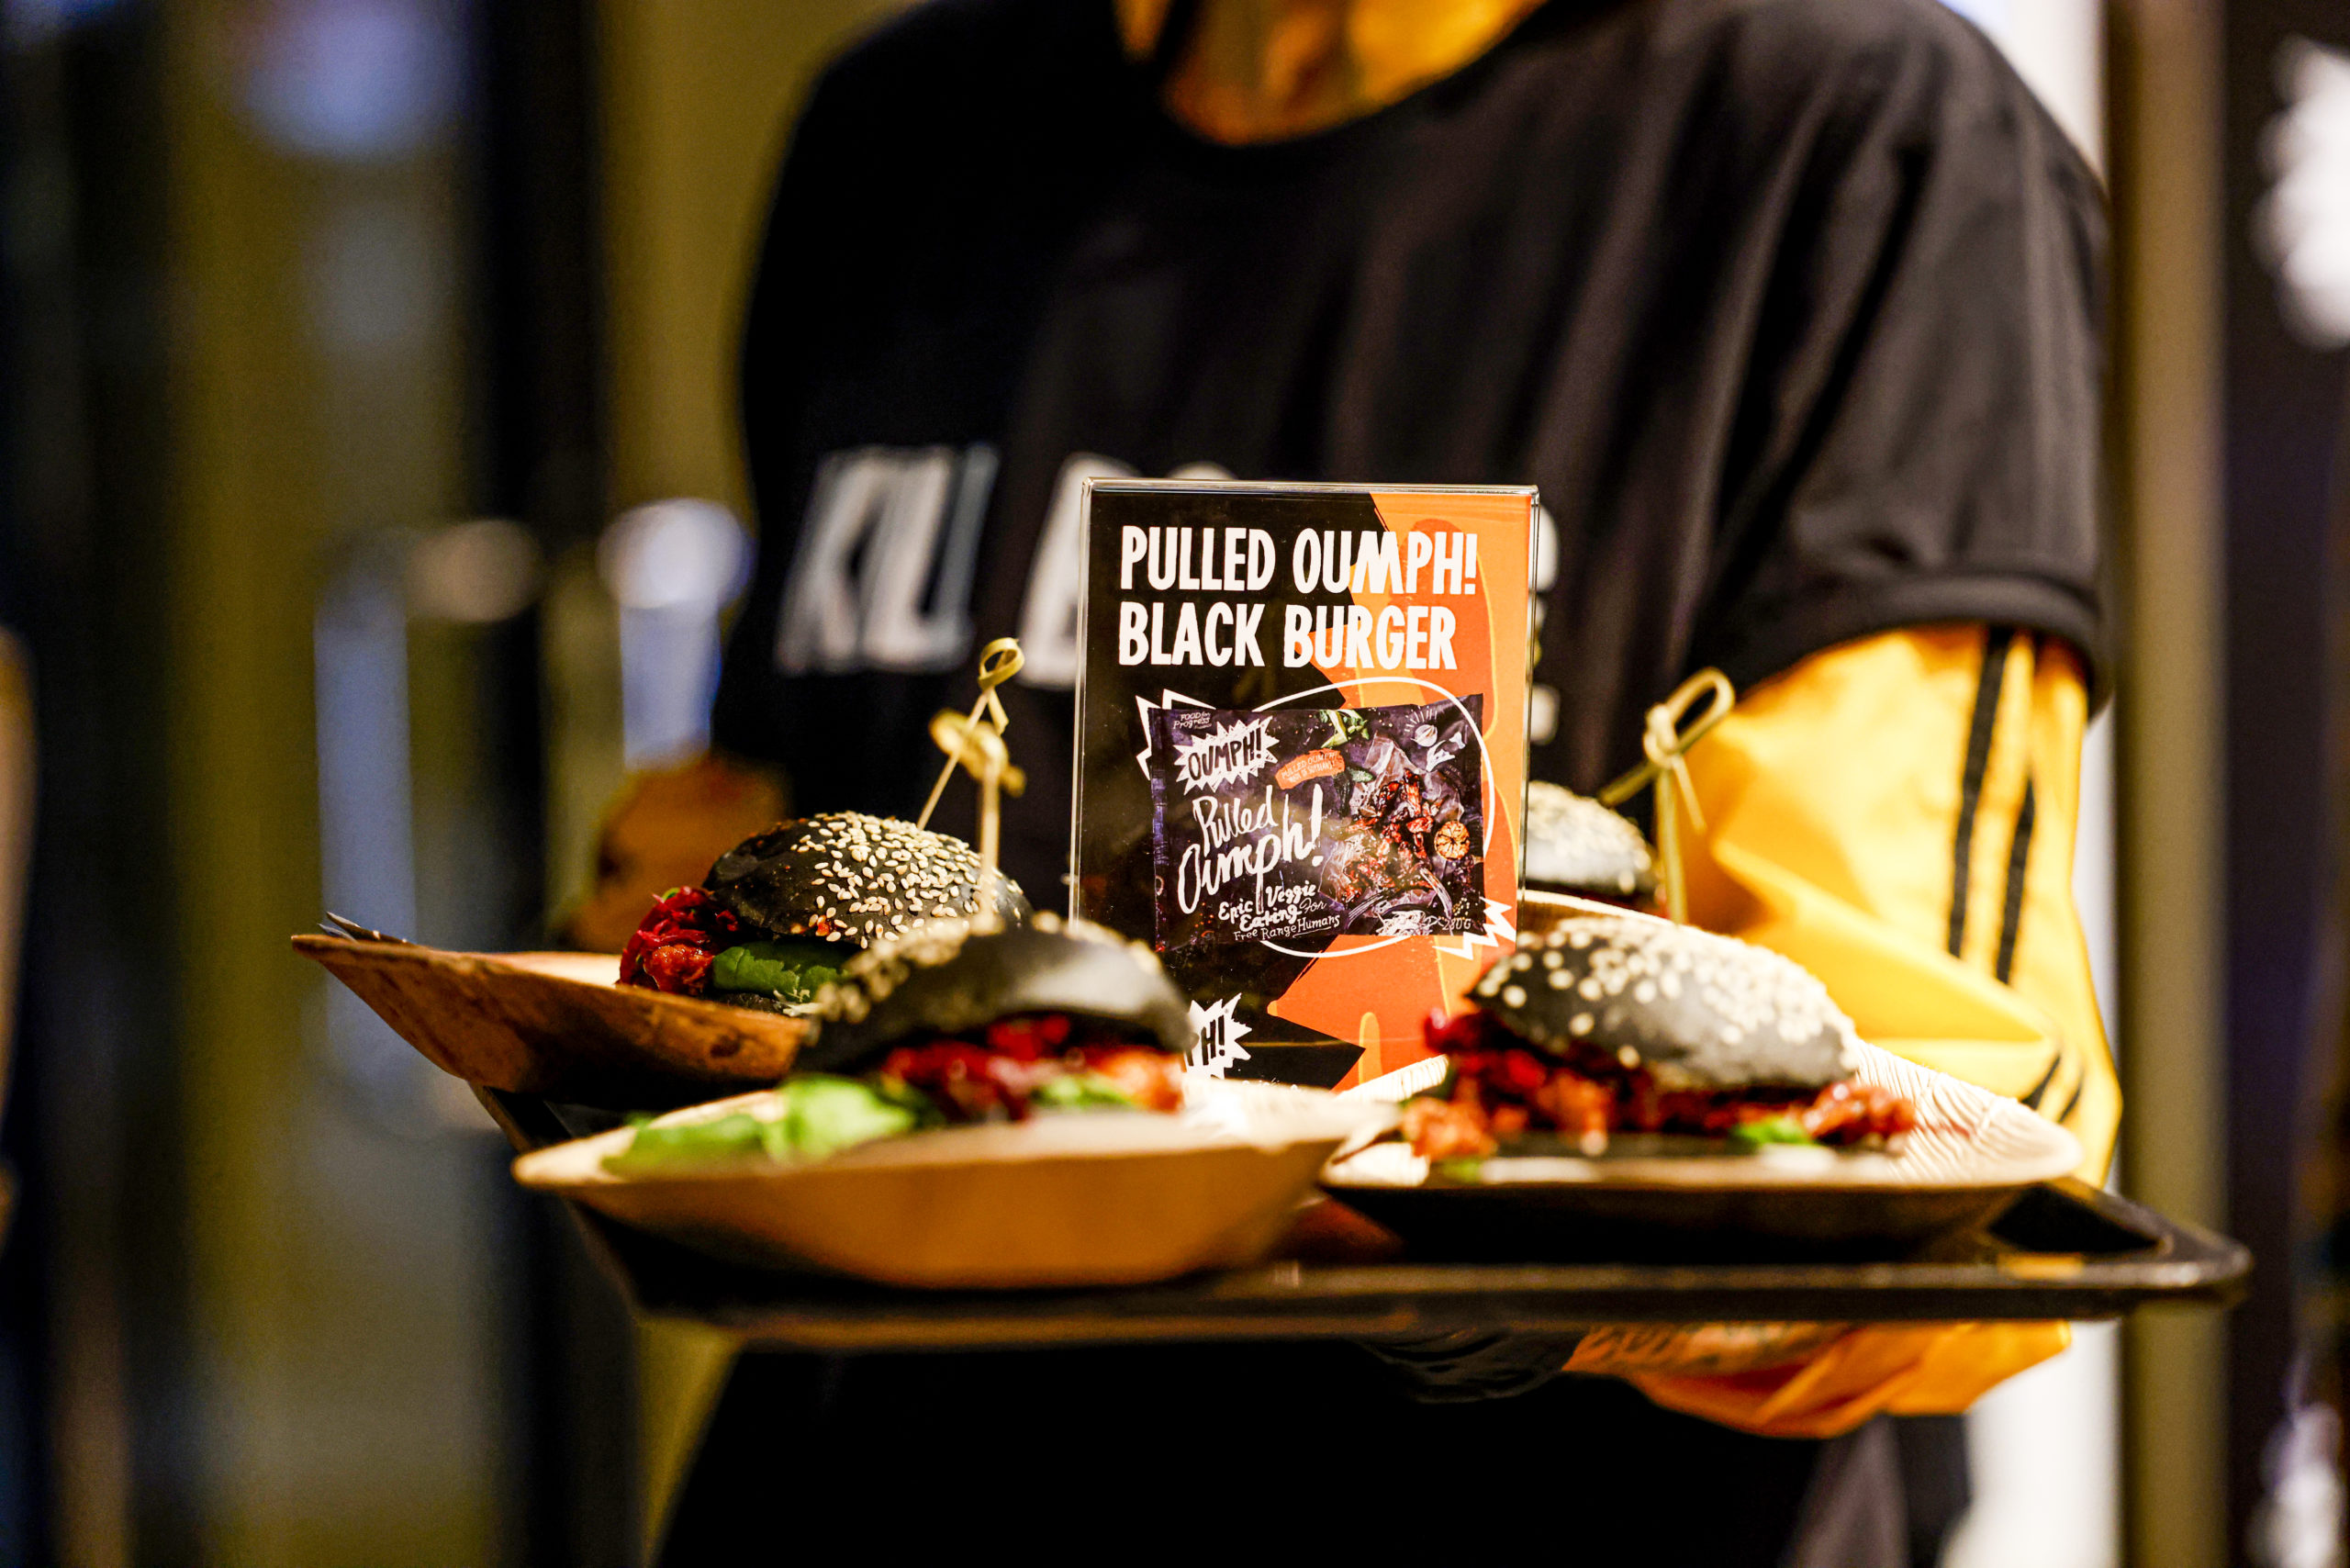 Der Pulled Oumph! Black Burger gehört zu den Signature Dishes des schwedischen Unternehmens. Foto: Getty Images/Isa Foltin